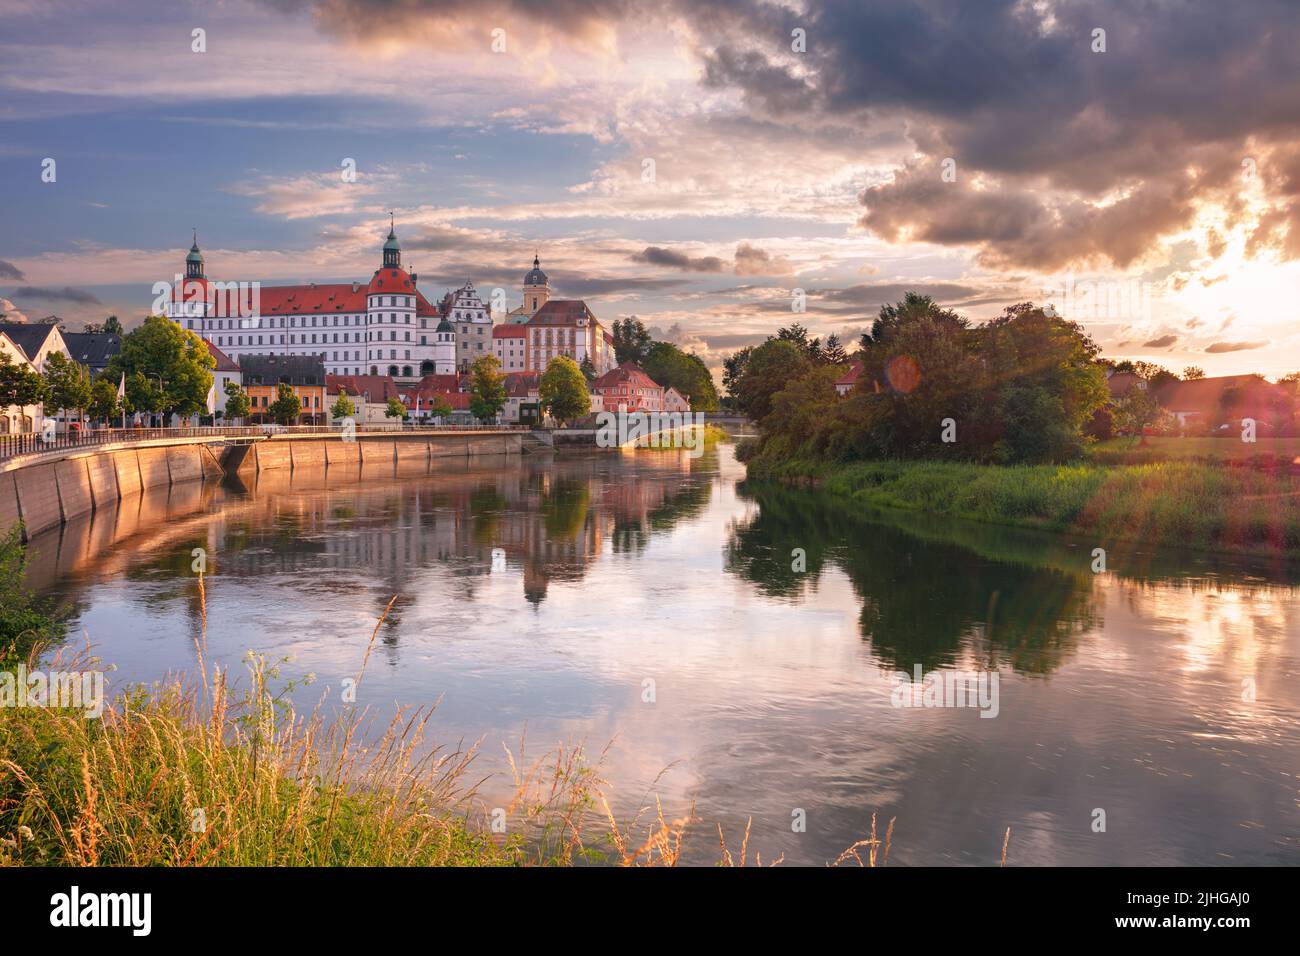 Neuburg an der Donau, Alemania. Imagen del paisaje urbano de Neuburg an der Donau, Alemania al atardecer del verano. Foto de stock